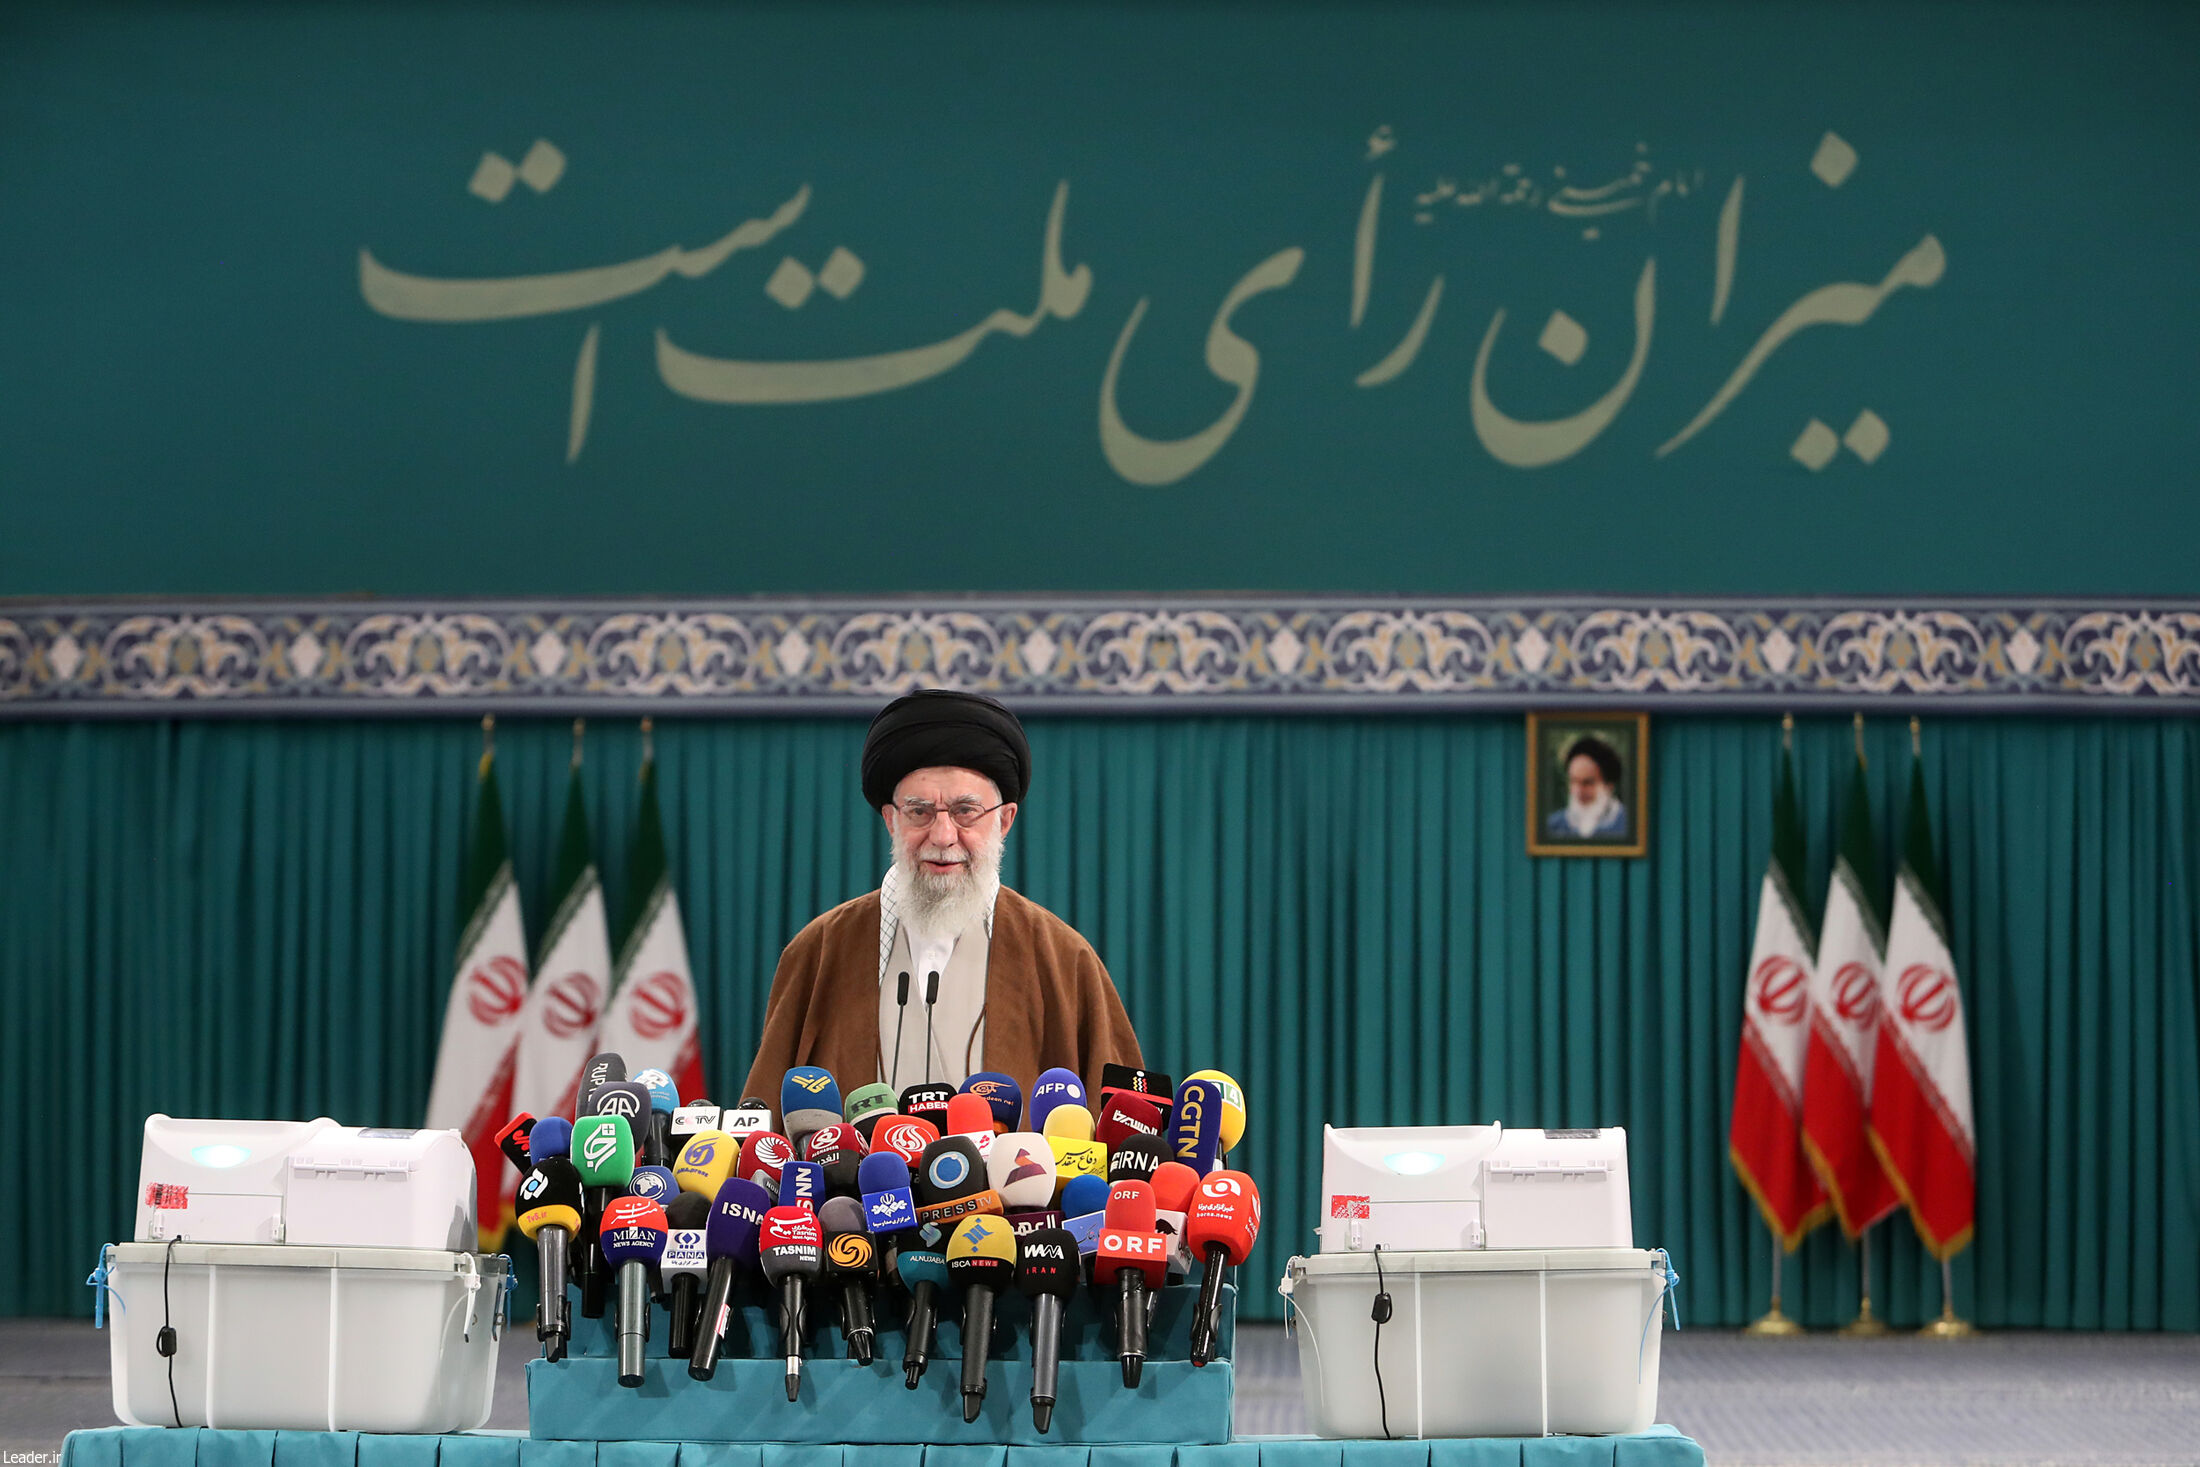 بالصور .. الإمام الخامنئی یدلی بصوته خلال الدورة التكميلية للانتخابات البرلمانیة في ايران  